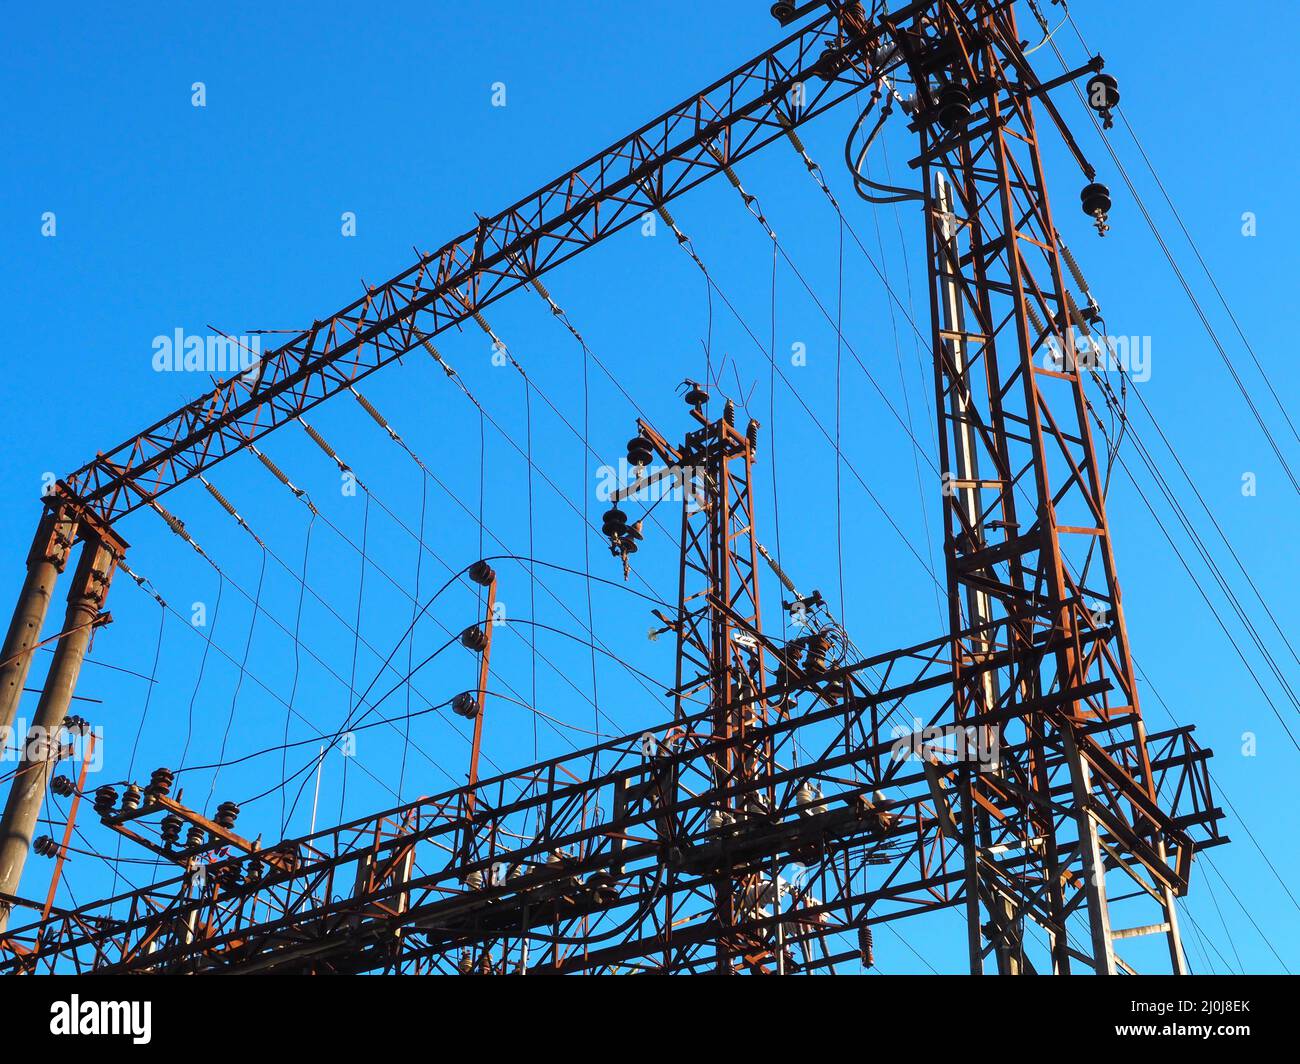 Rete elettrica ferroviaria con pali e fili di ferro su sfondo azzurro cielo chiaro Foto Stock